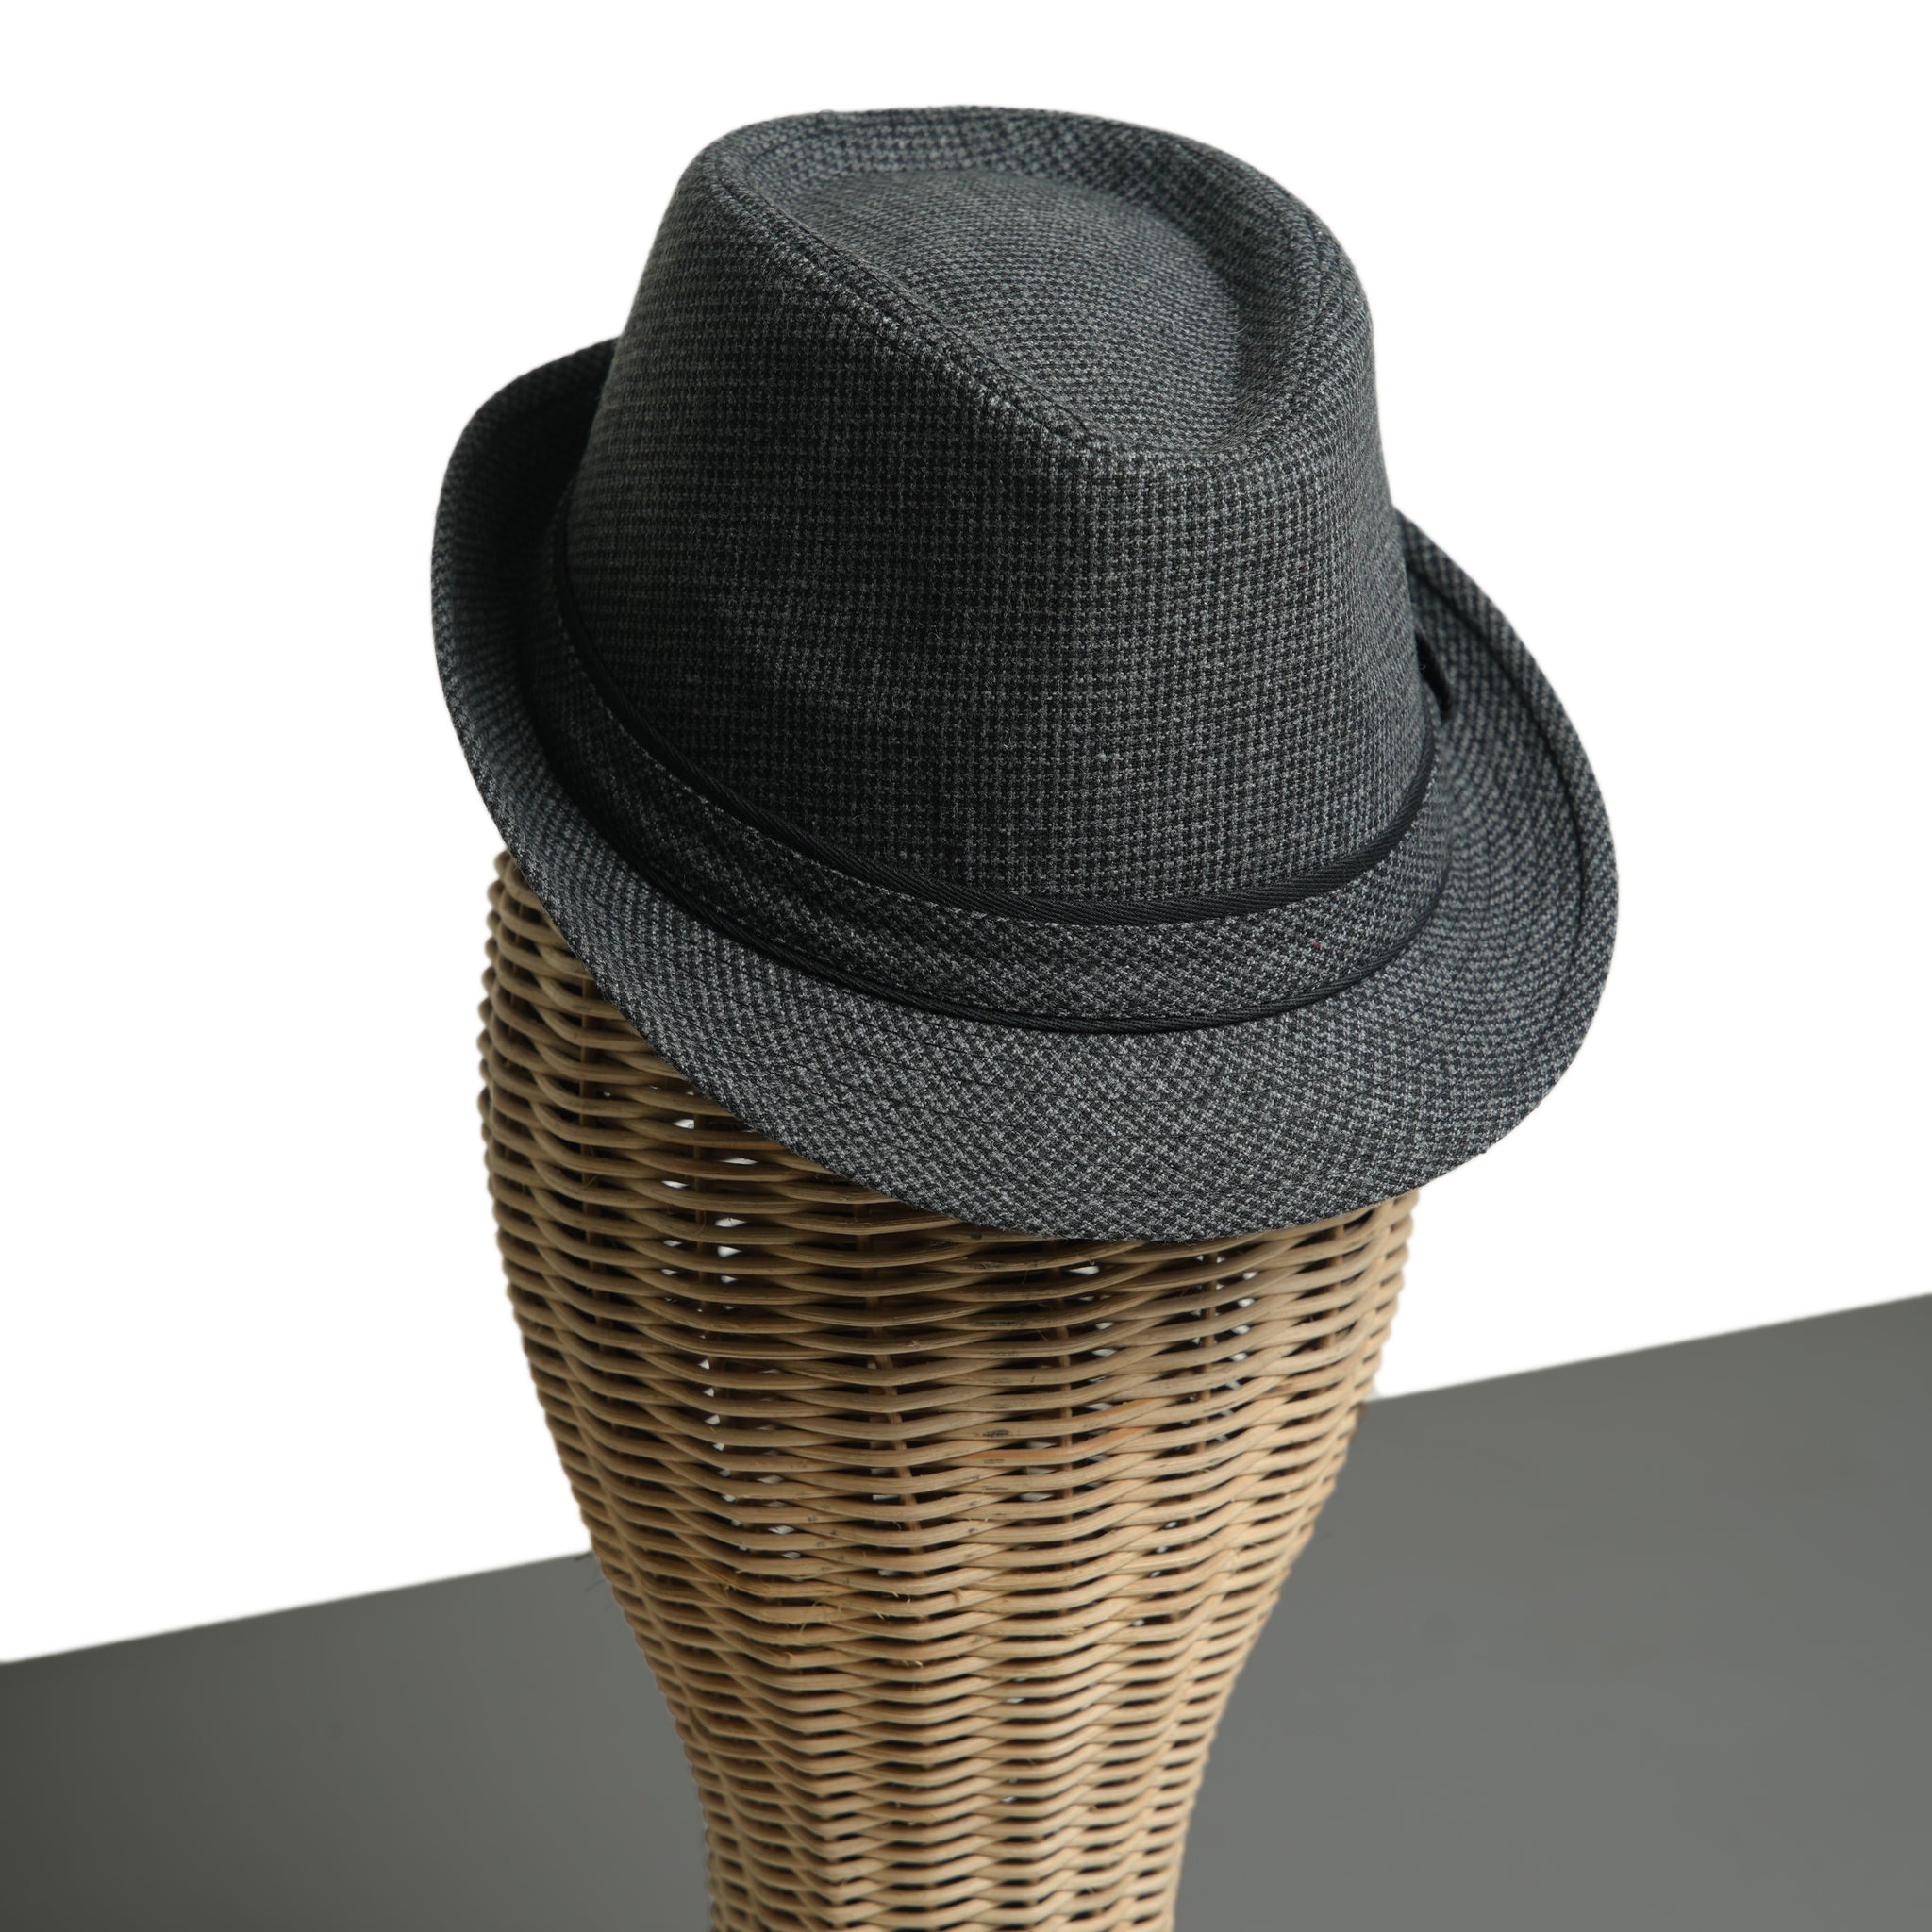 Chokore Classic Plaid Fedora Hat (Dark Gray)